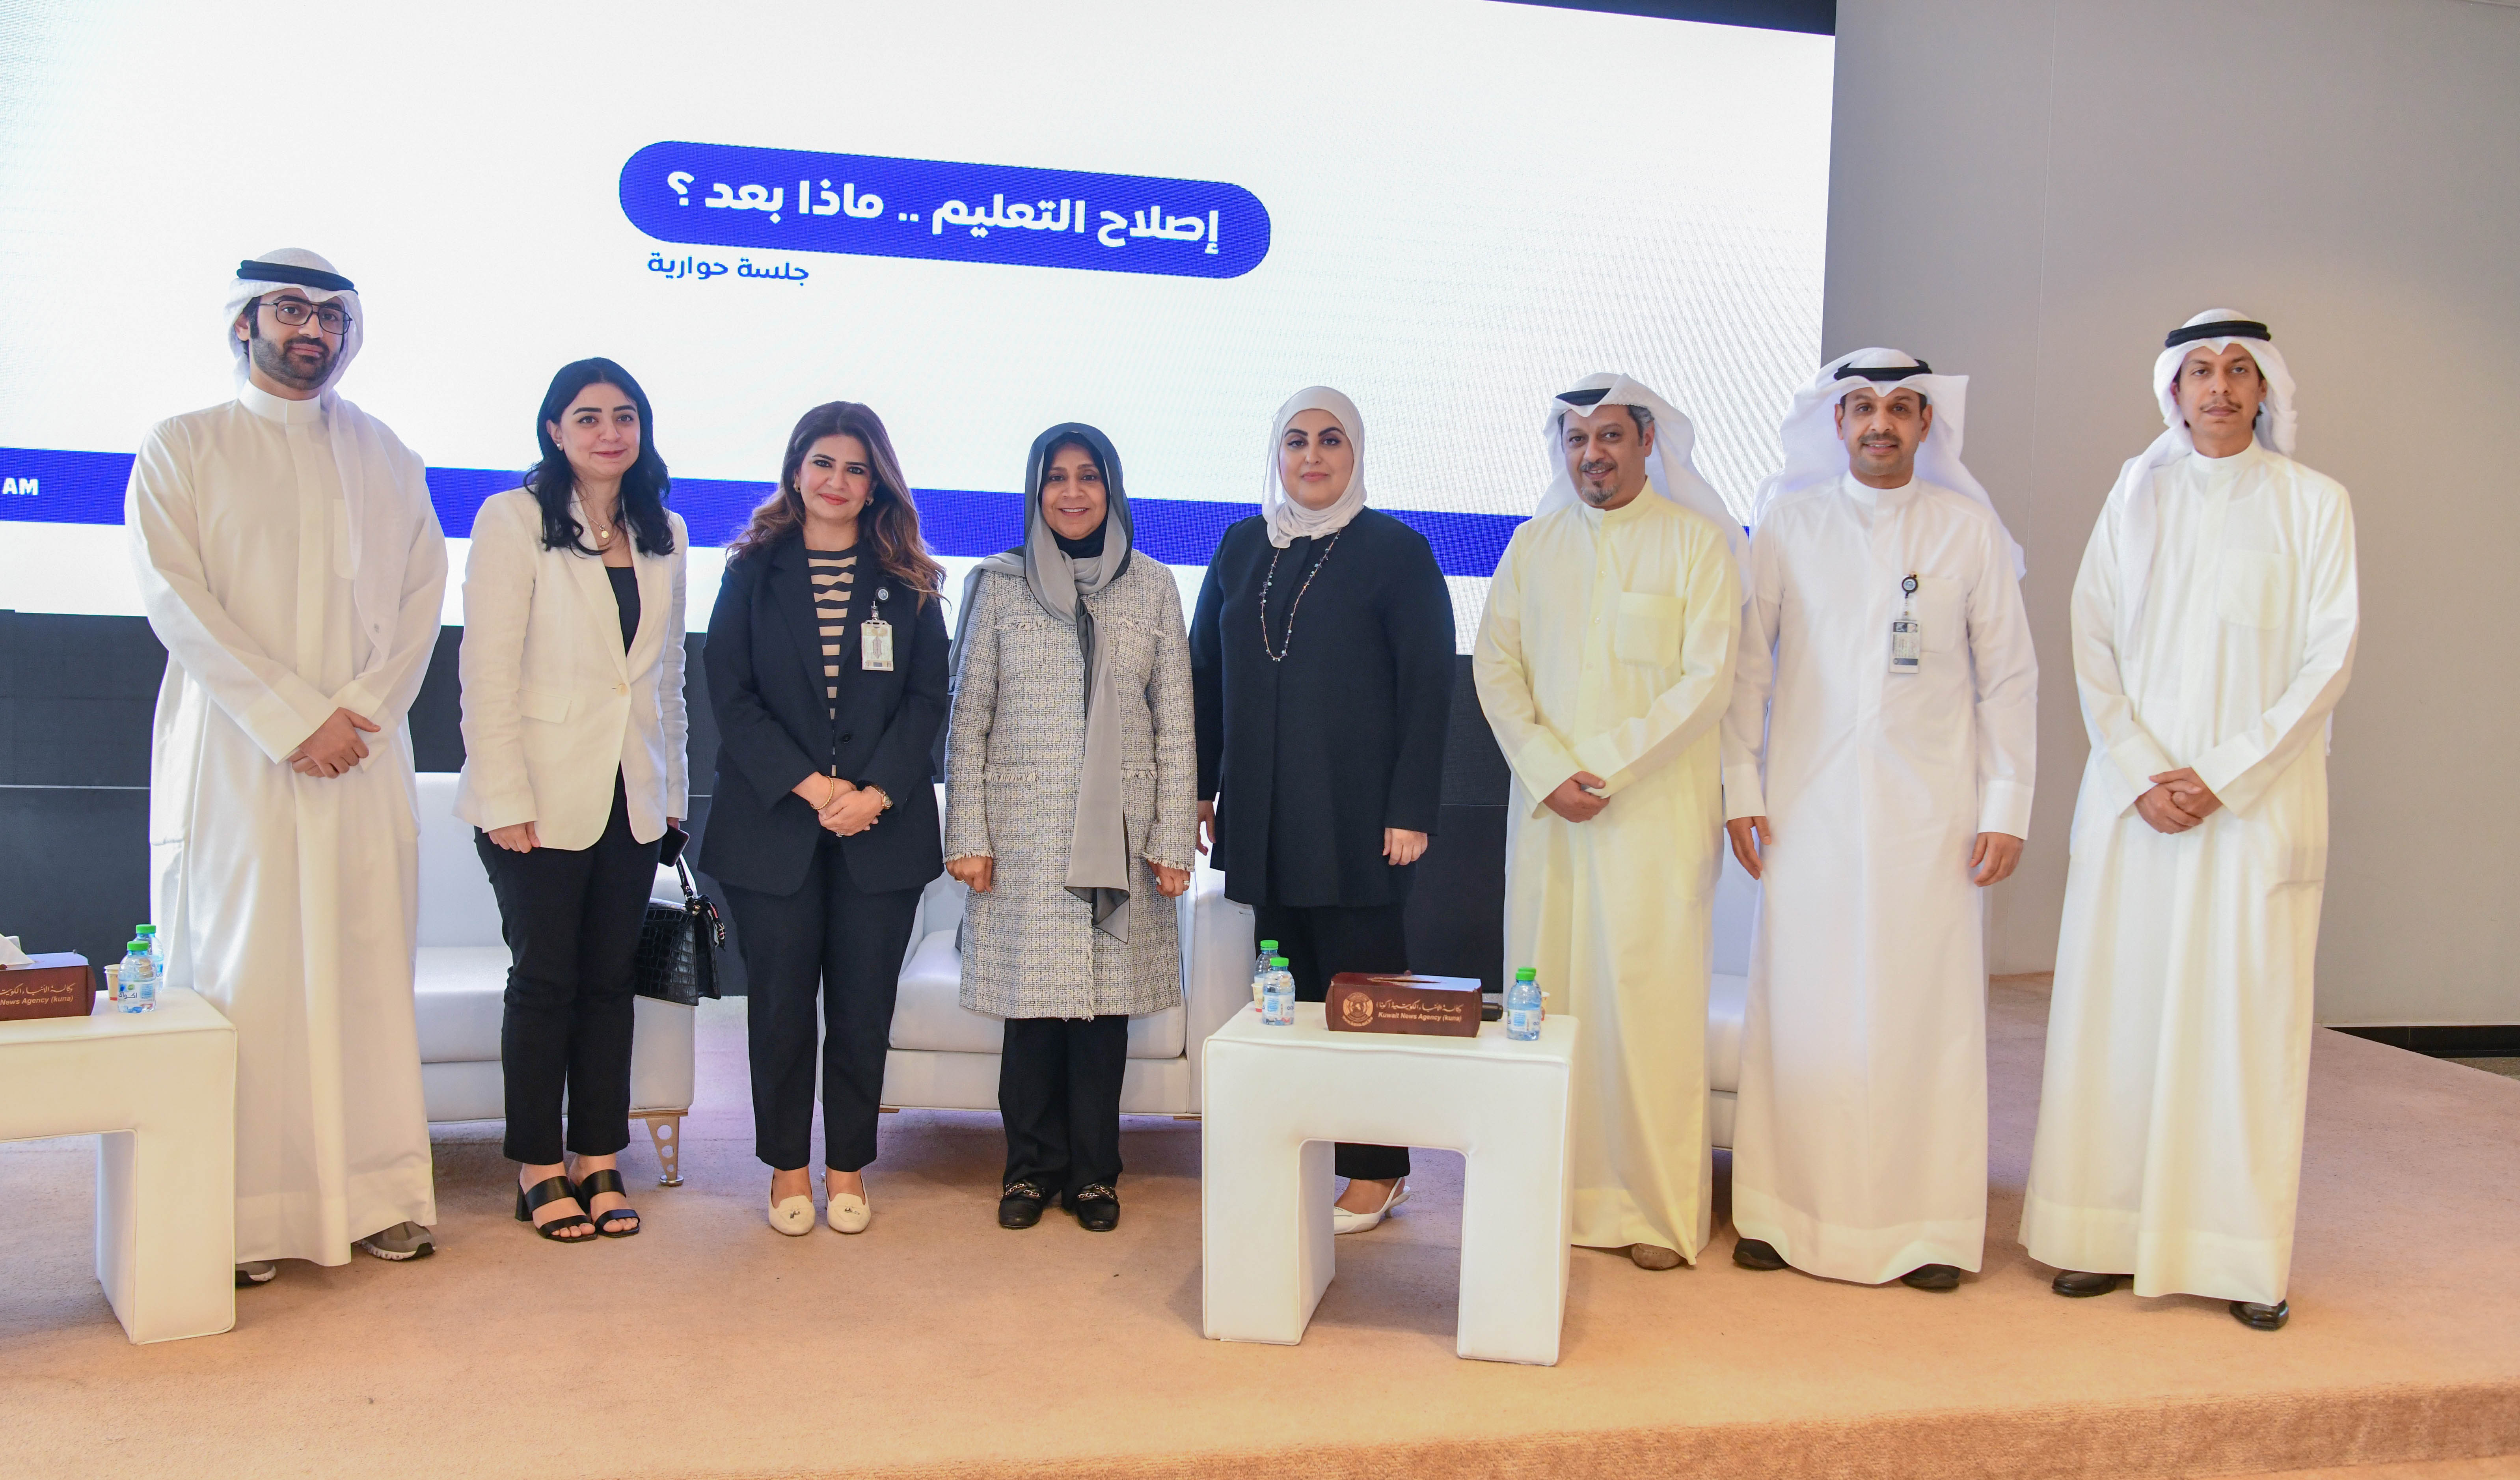 المشاركون في ندوة (اصلاح التعليم..ماذا بعد) ومسؤولي وكالة الأنباء الكويتية (كونا)